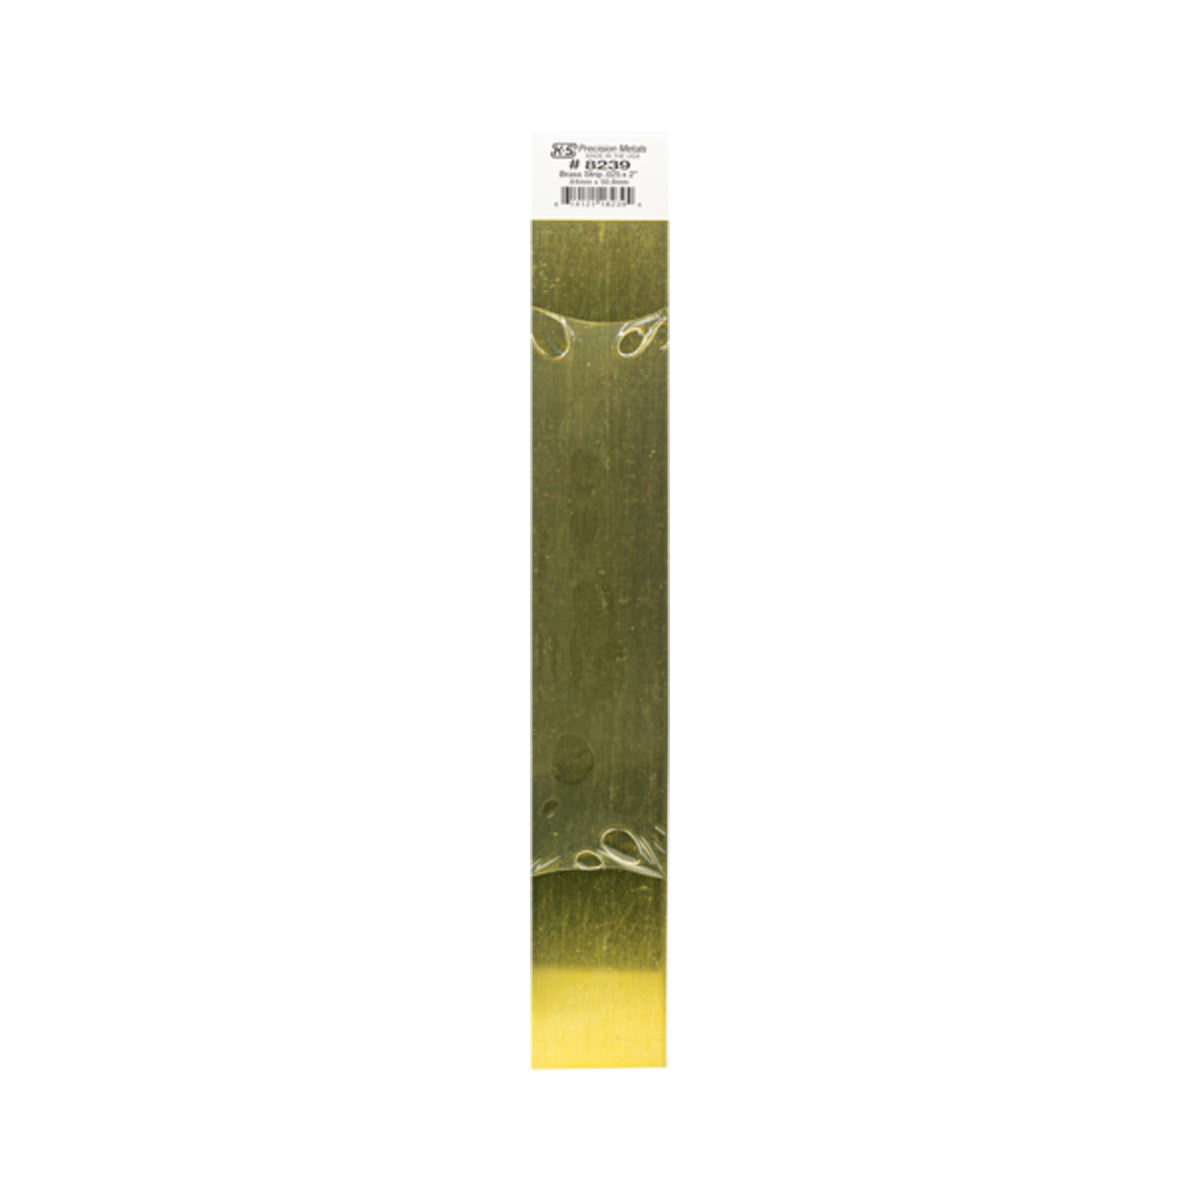 K&S™ Brass Strip: 0.025" Thick x 2" Wide x 12" Long (1 Piece)